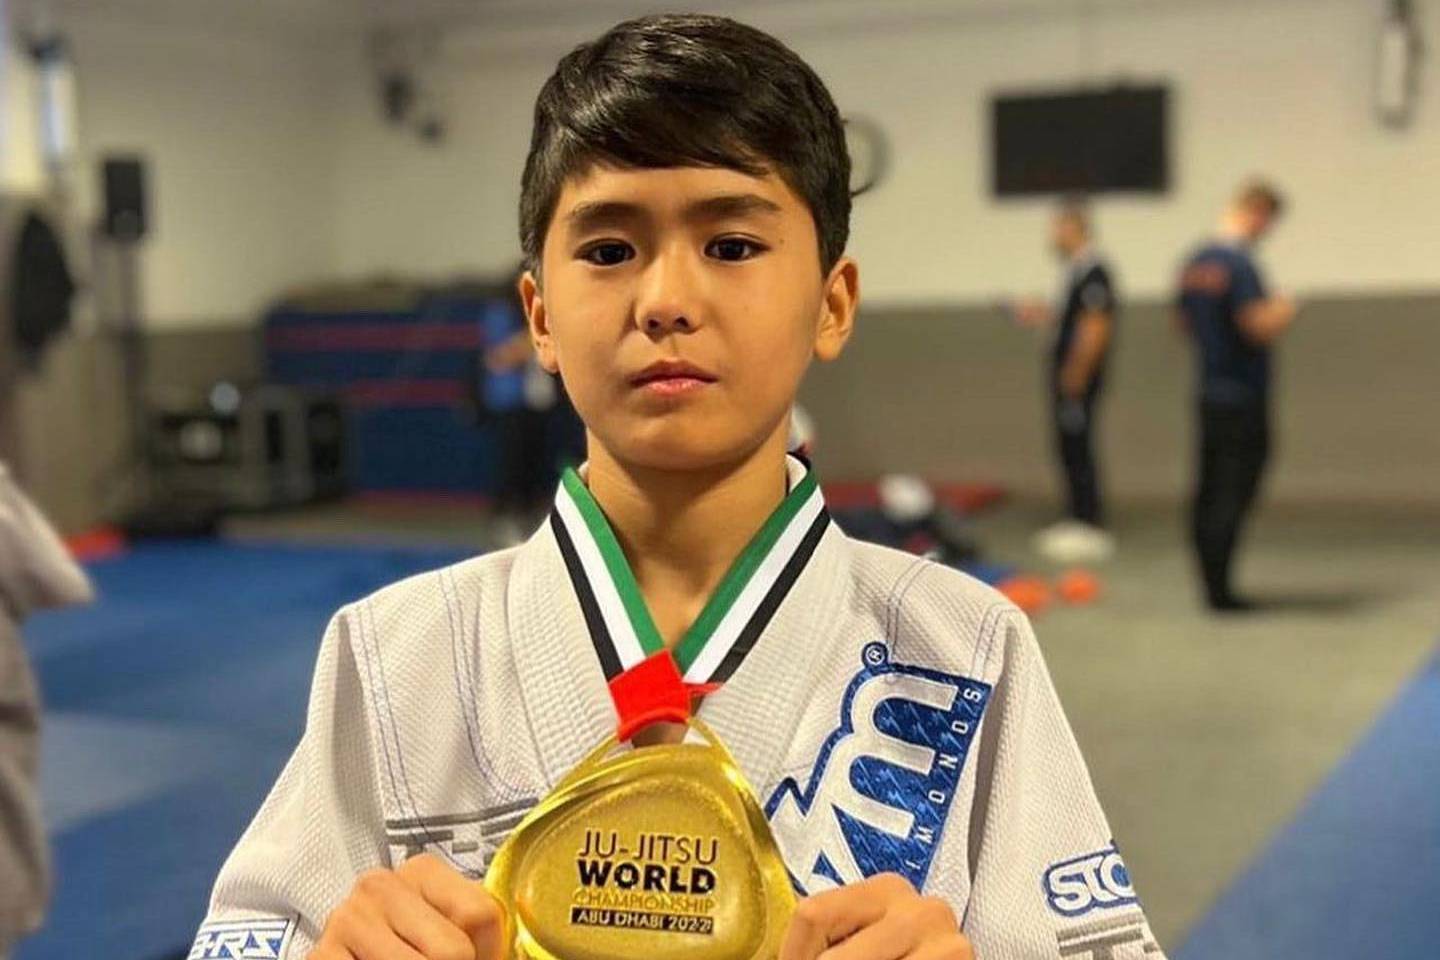 Новости Казахстана / Общество в Казахстане / Юный спортсмен из Казахстана стал чемпионом мира по джиу-джитсу